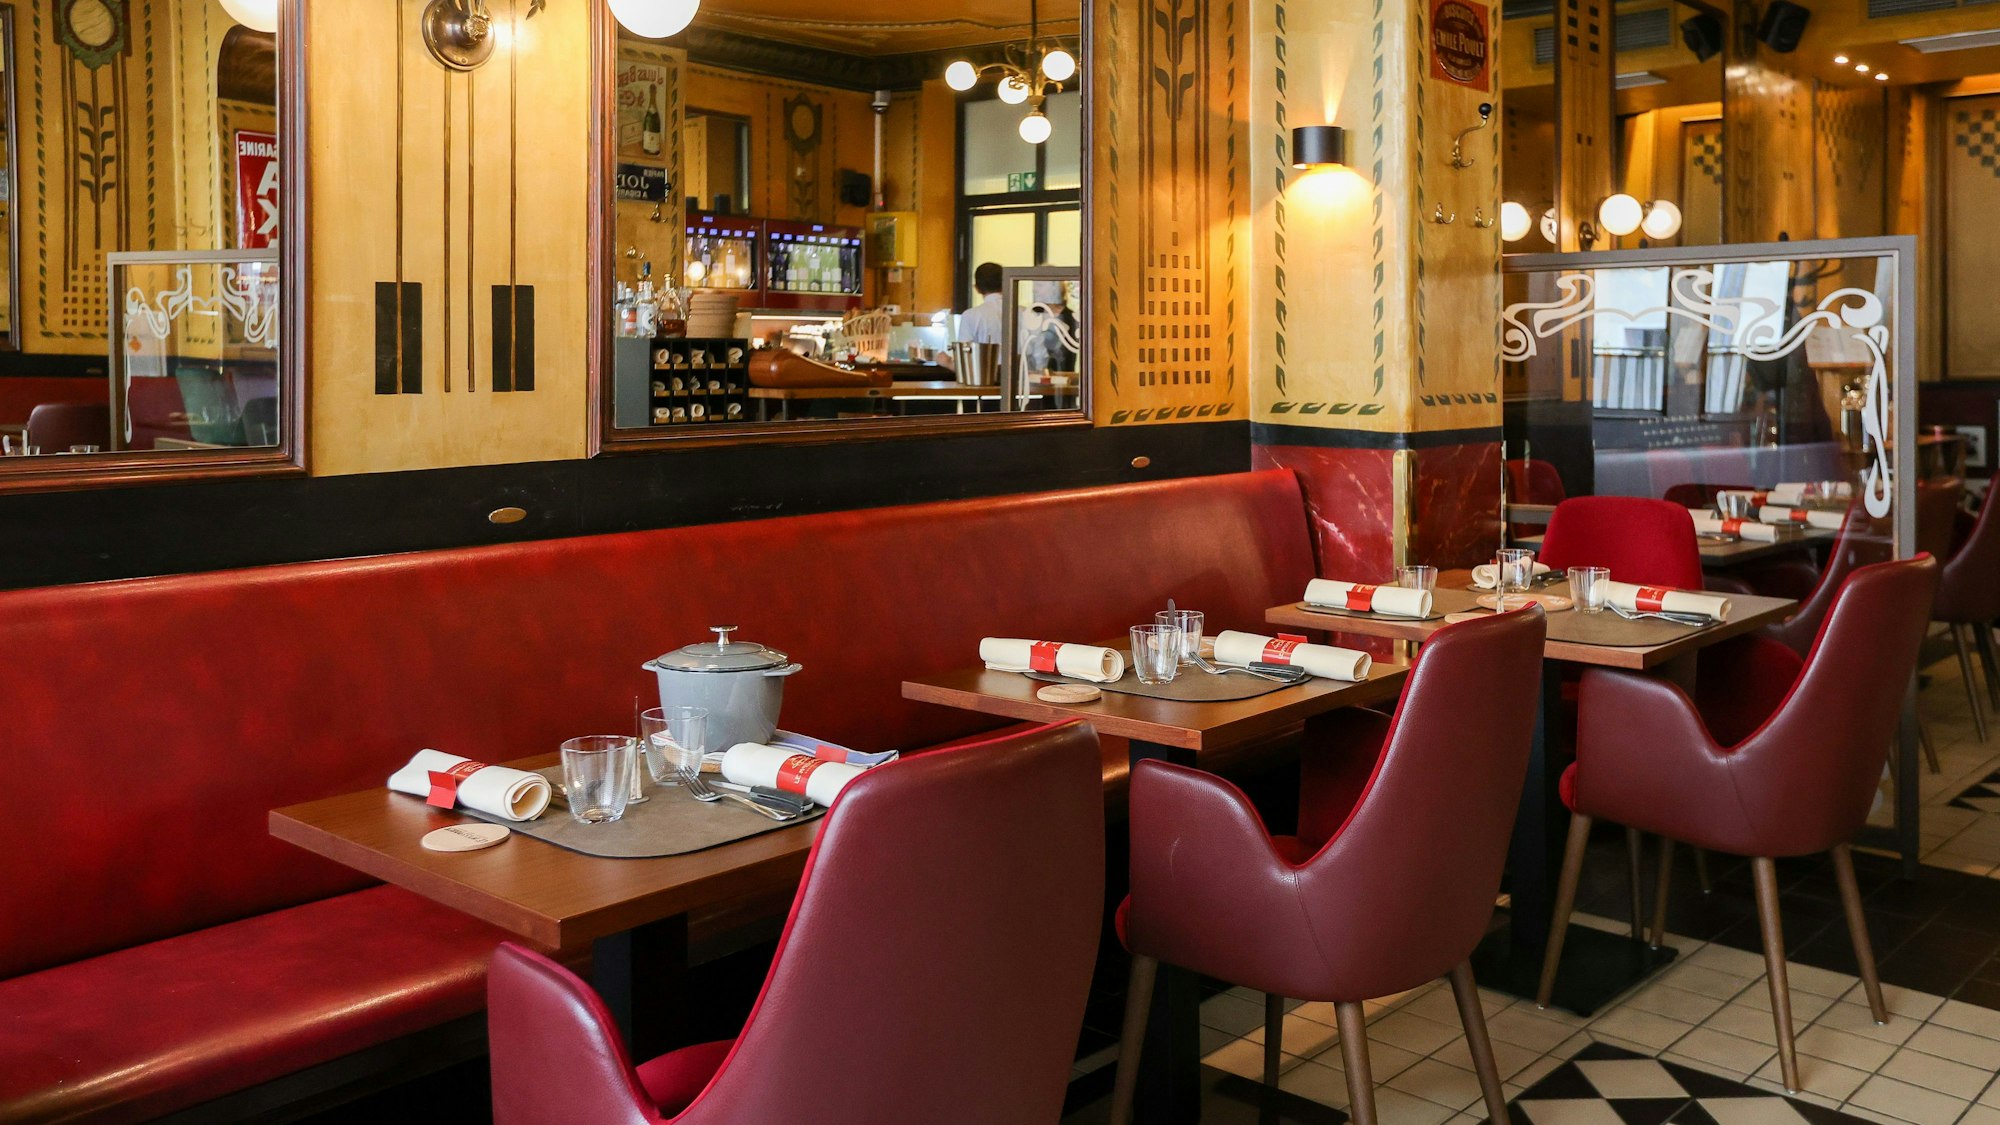 Innenraum des Restaurants, die Tische sind gedeckt und Stühle und Bänke mit rotem Leder bezogen